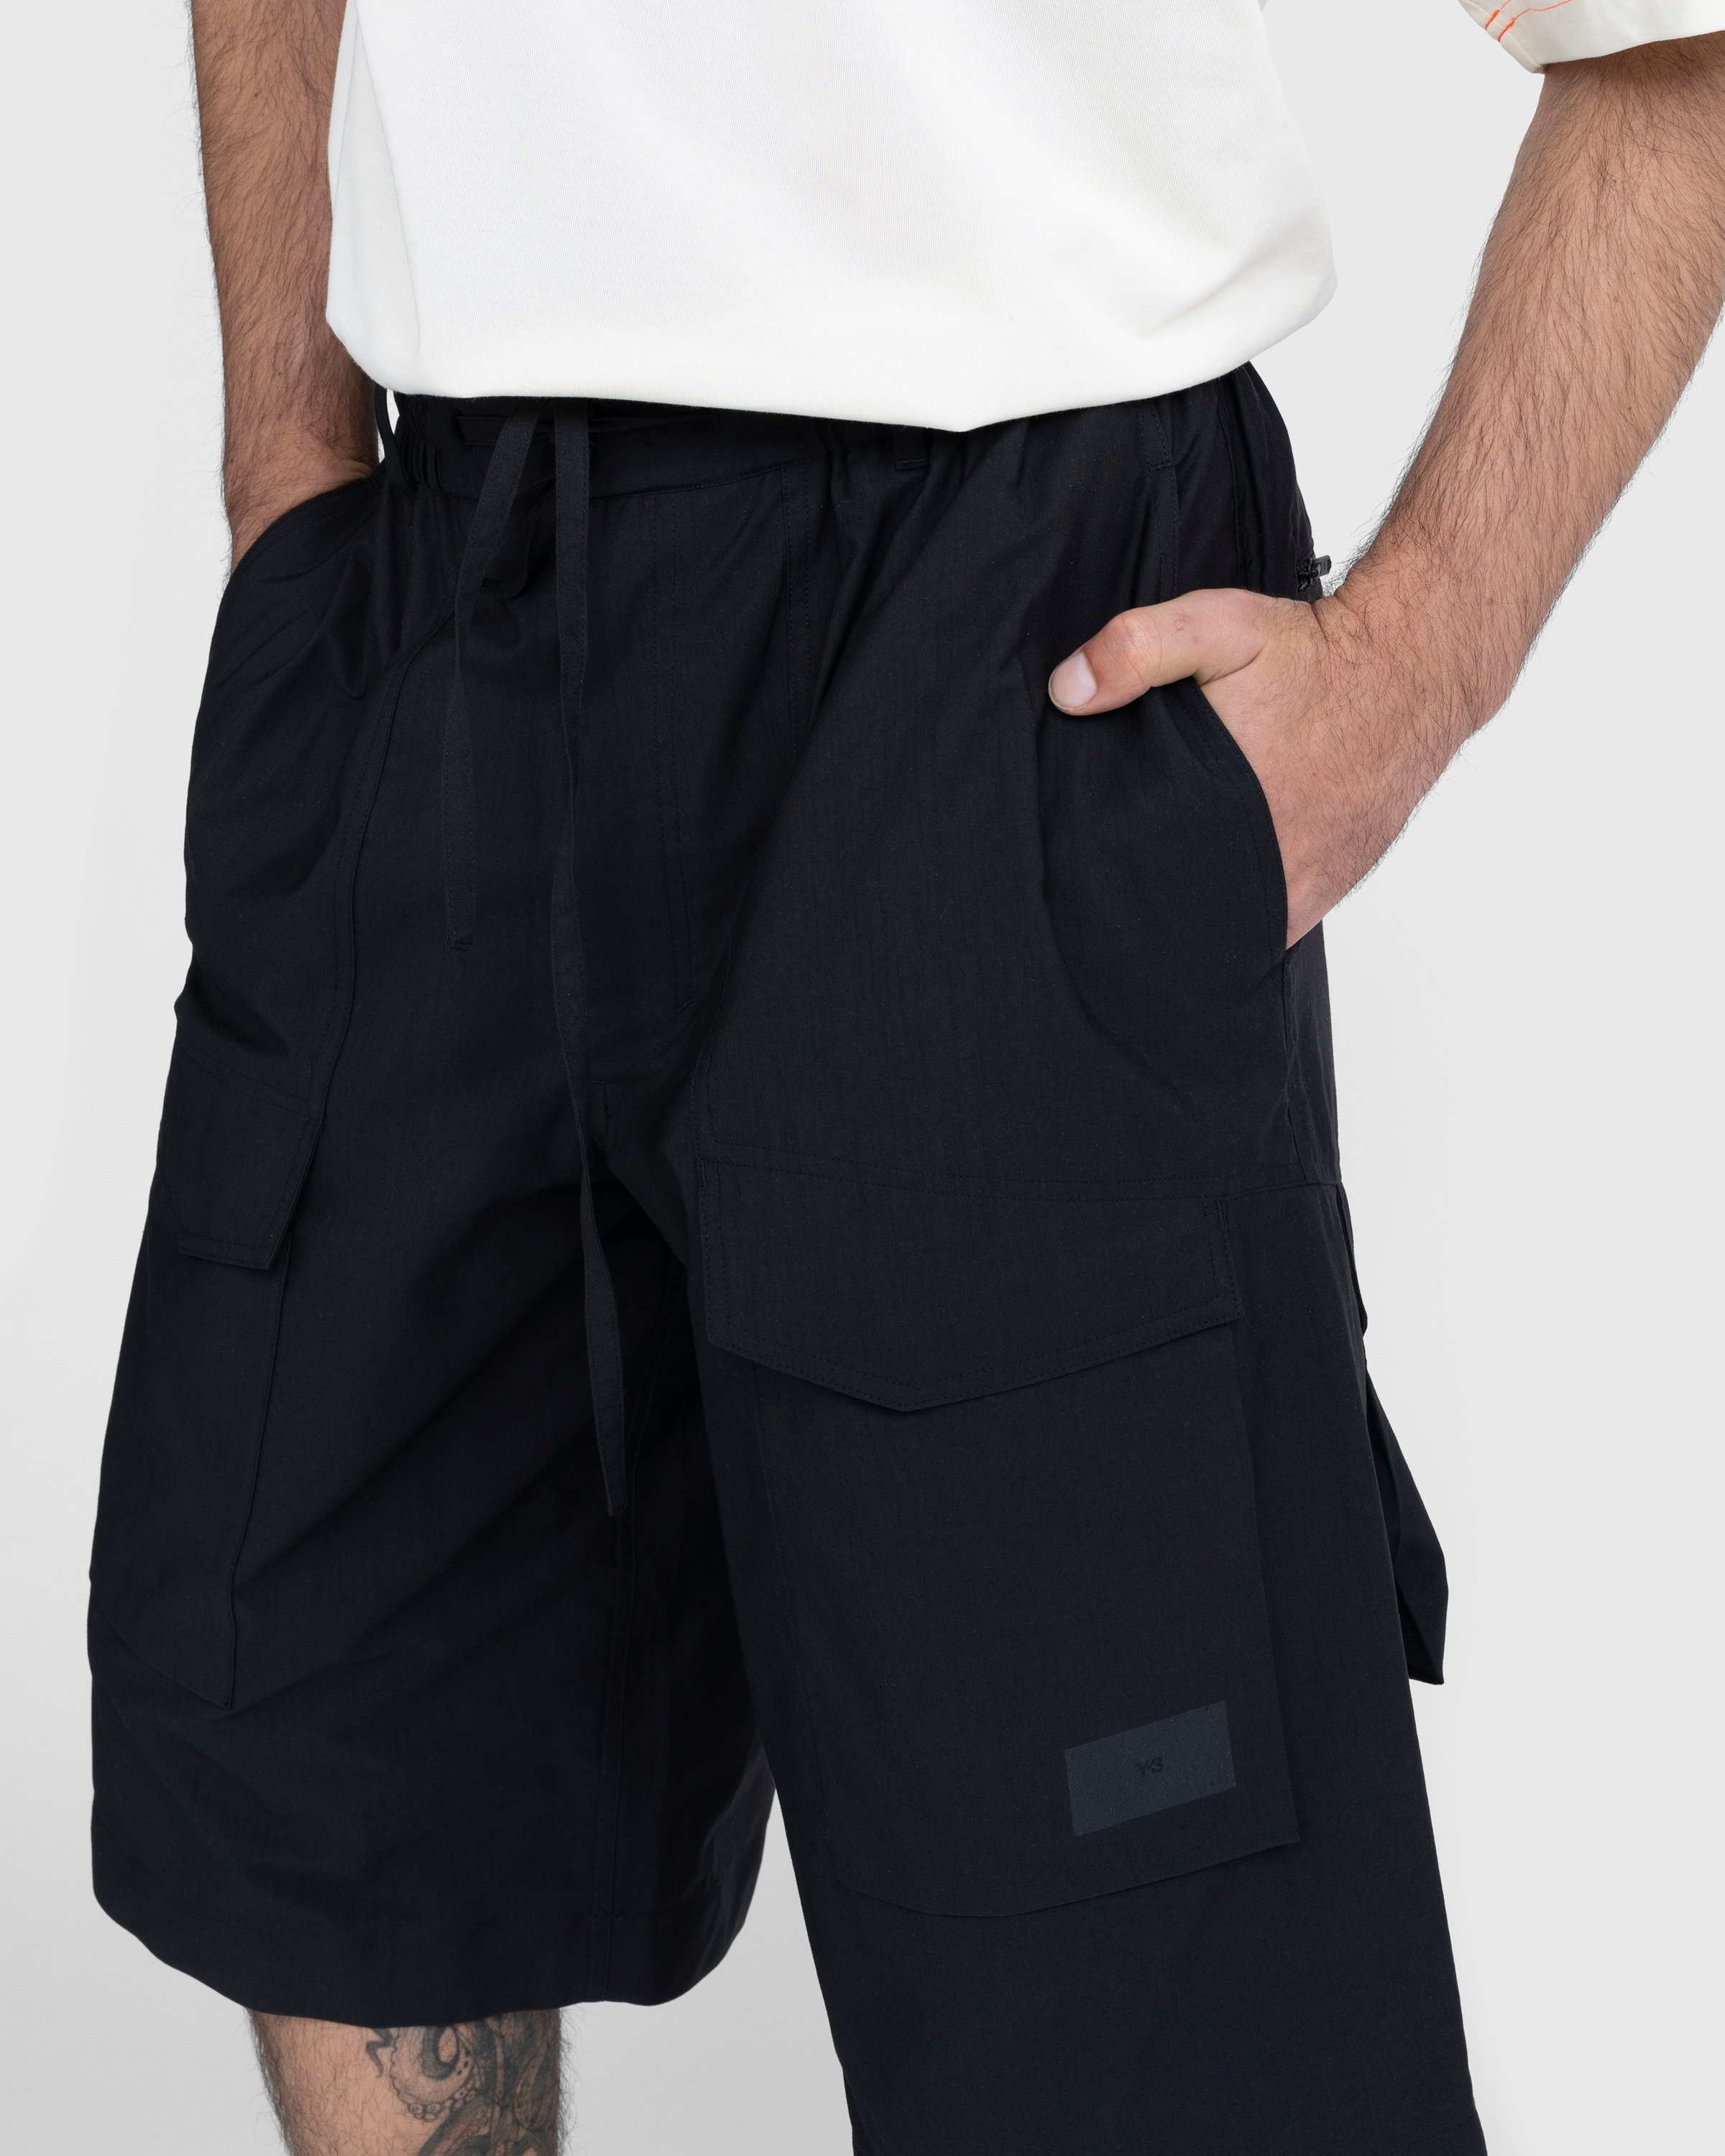 Y-3 – Workwear Shorts Black | Highsnobiety Shop